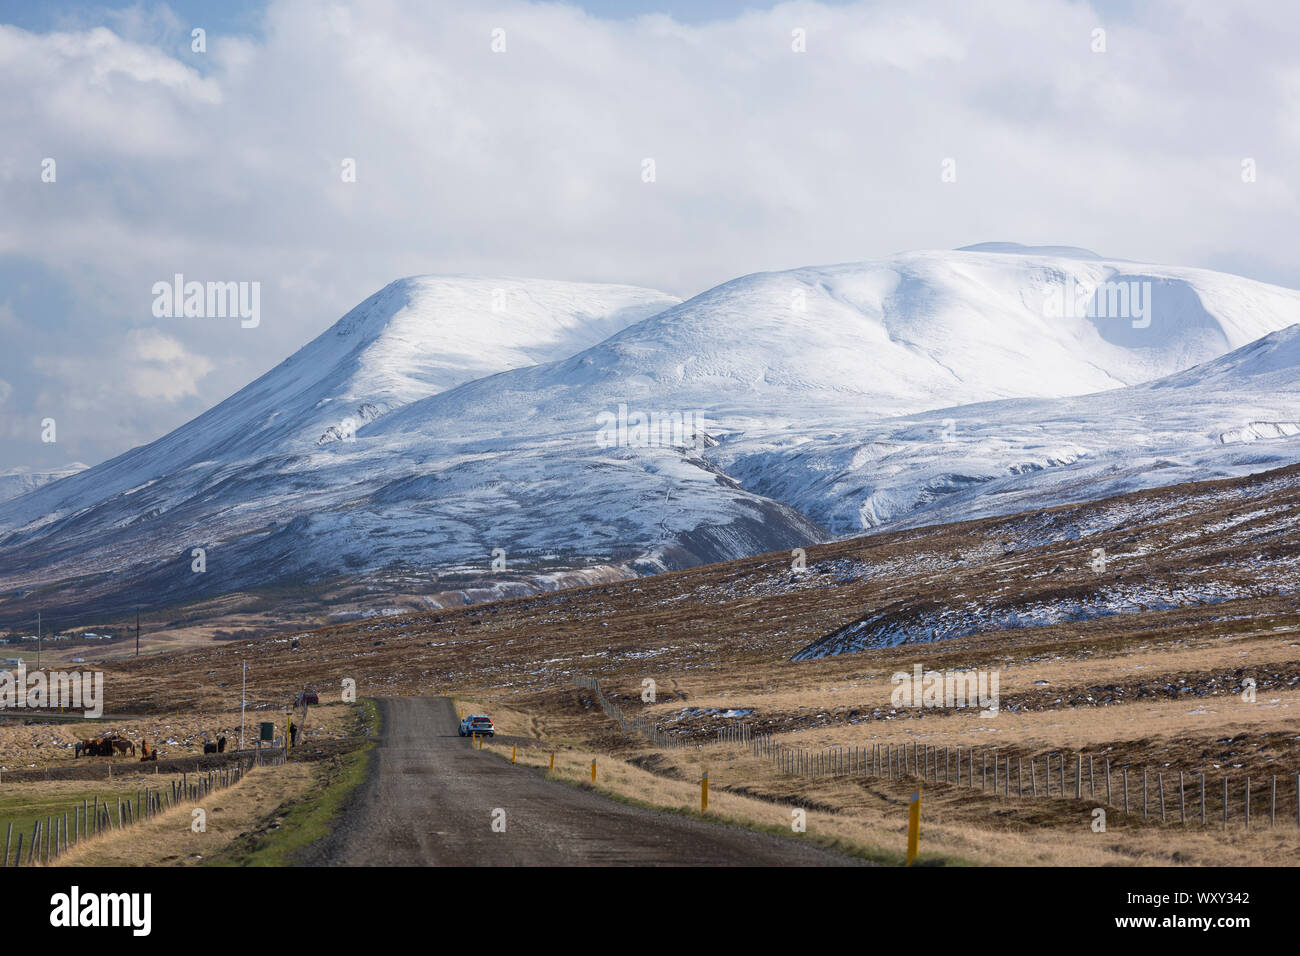 SAUDARKROKUR, Islandia - camino de tierra y el paisaje de las montañas cubiertas de nieve en el norte de Islandia. Foto de stock